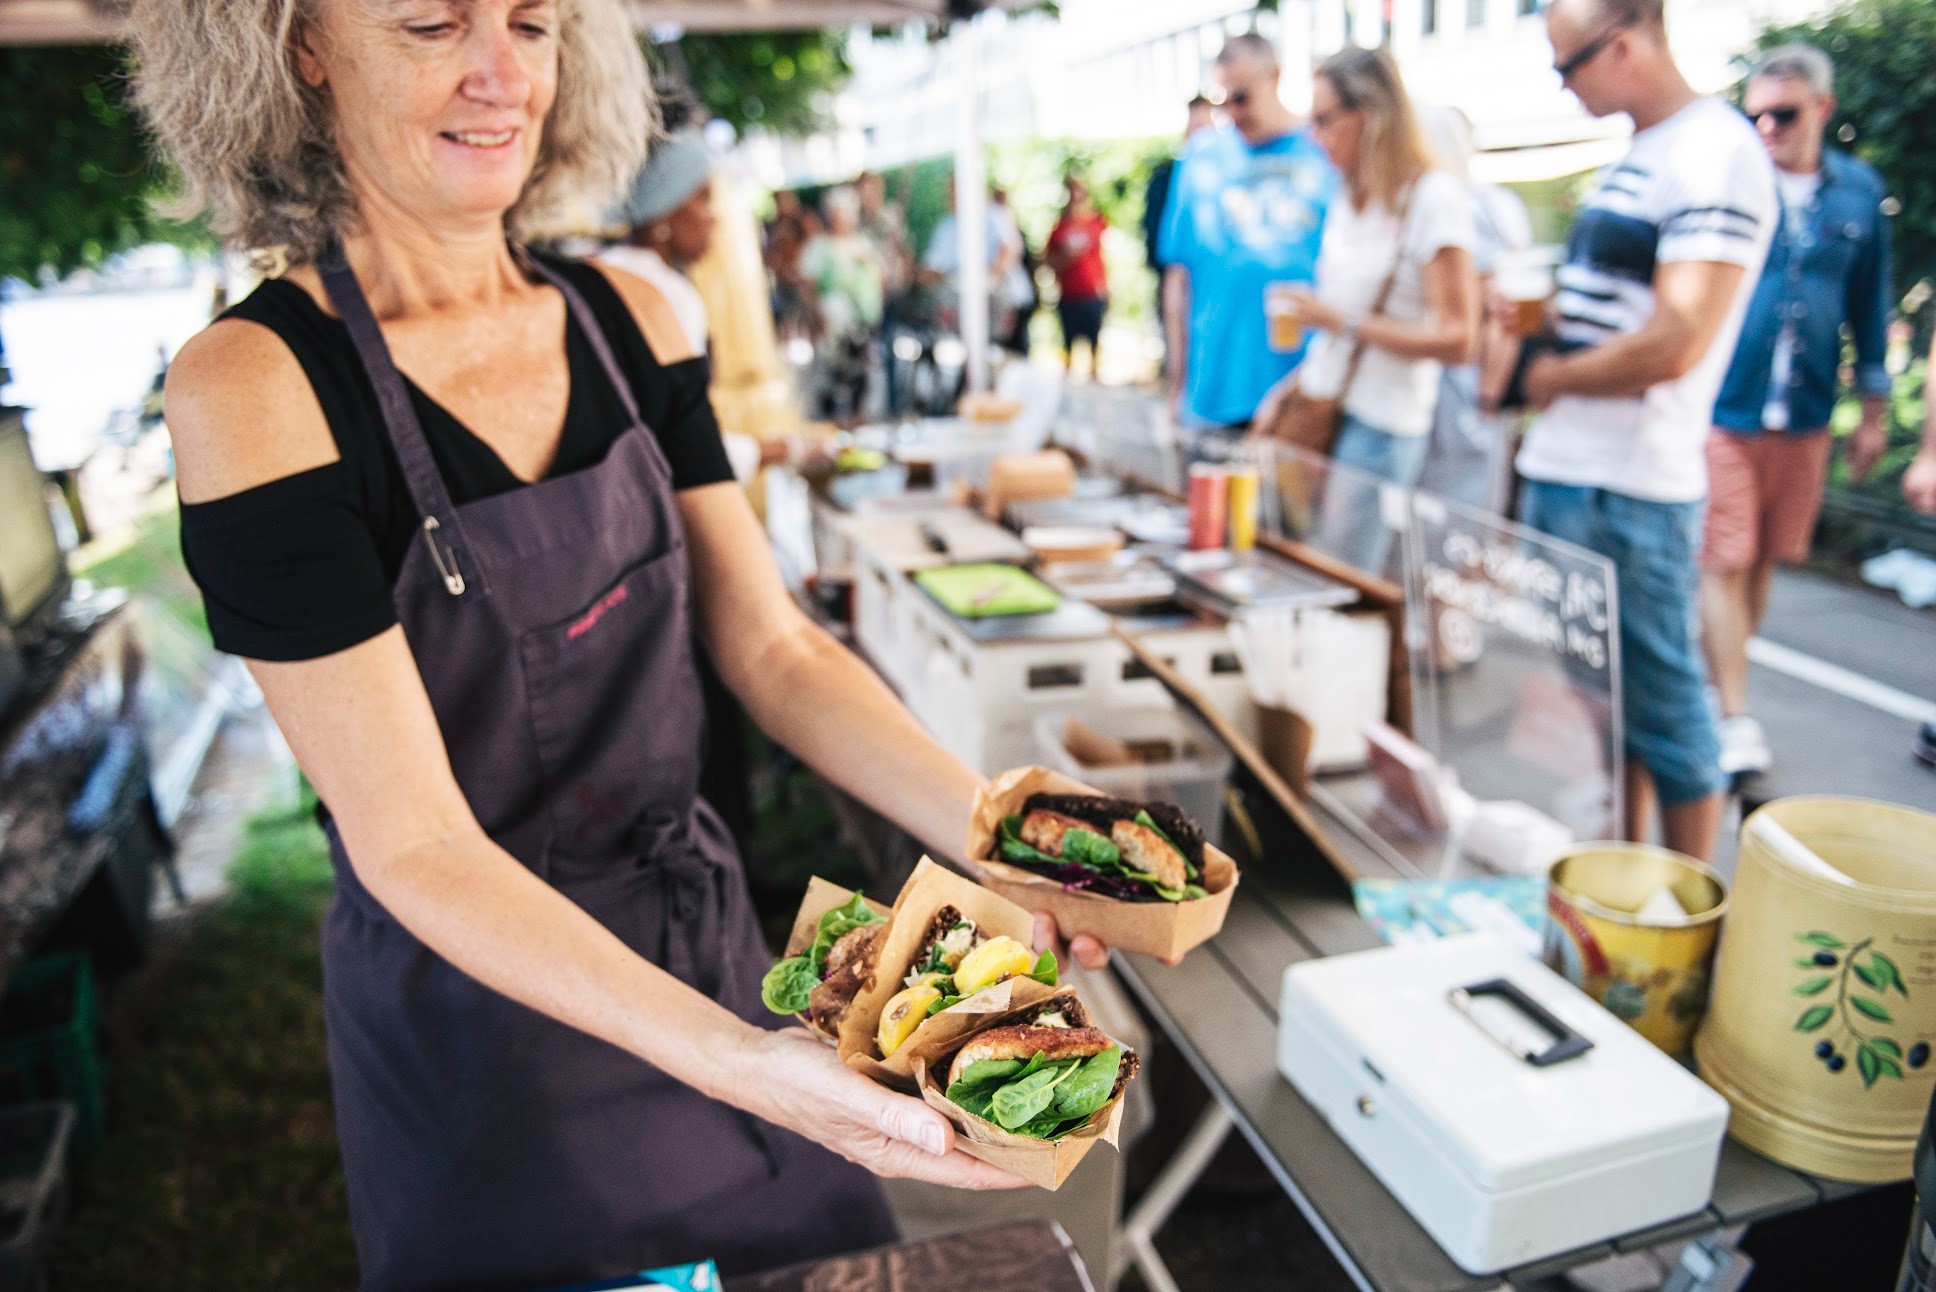 Streetfood-markederne fungerer som laboratorium for det næste gastroeventyr, mener to eksperter) (Foto: Rasmus Poulsgaard for Street Food om Søerne)